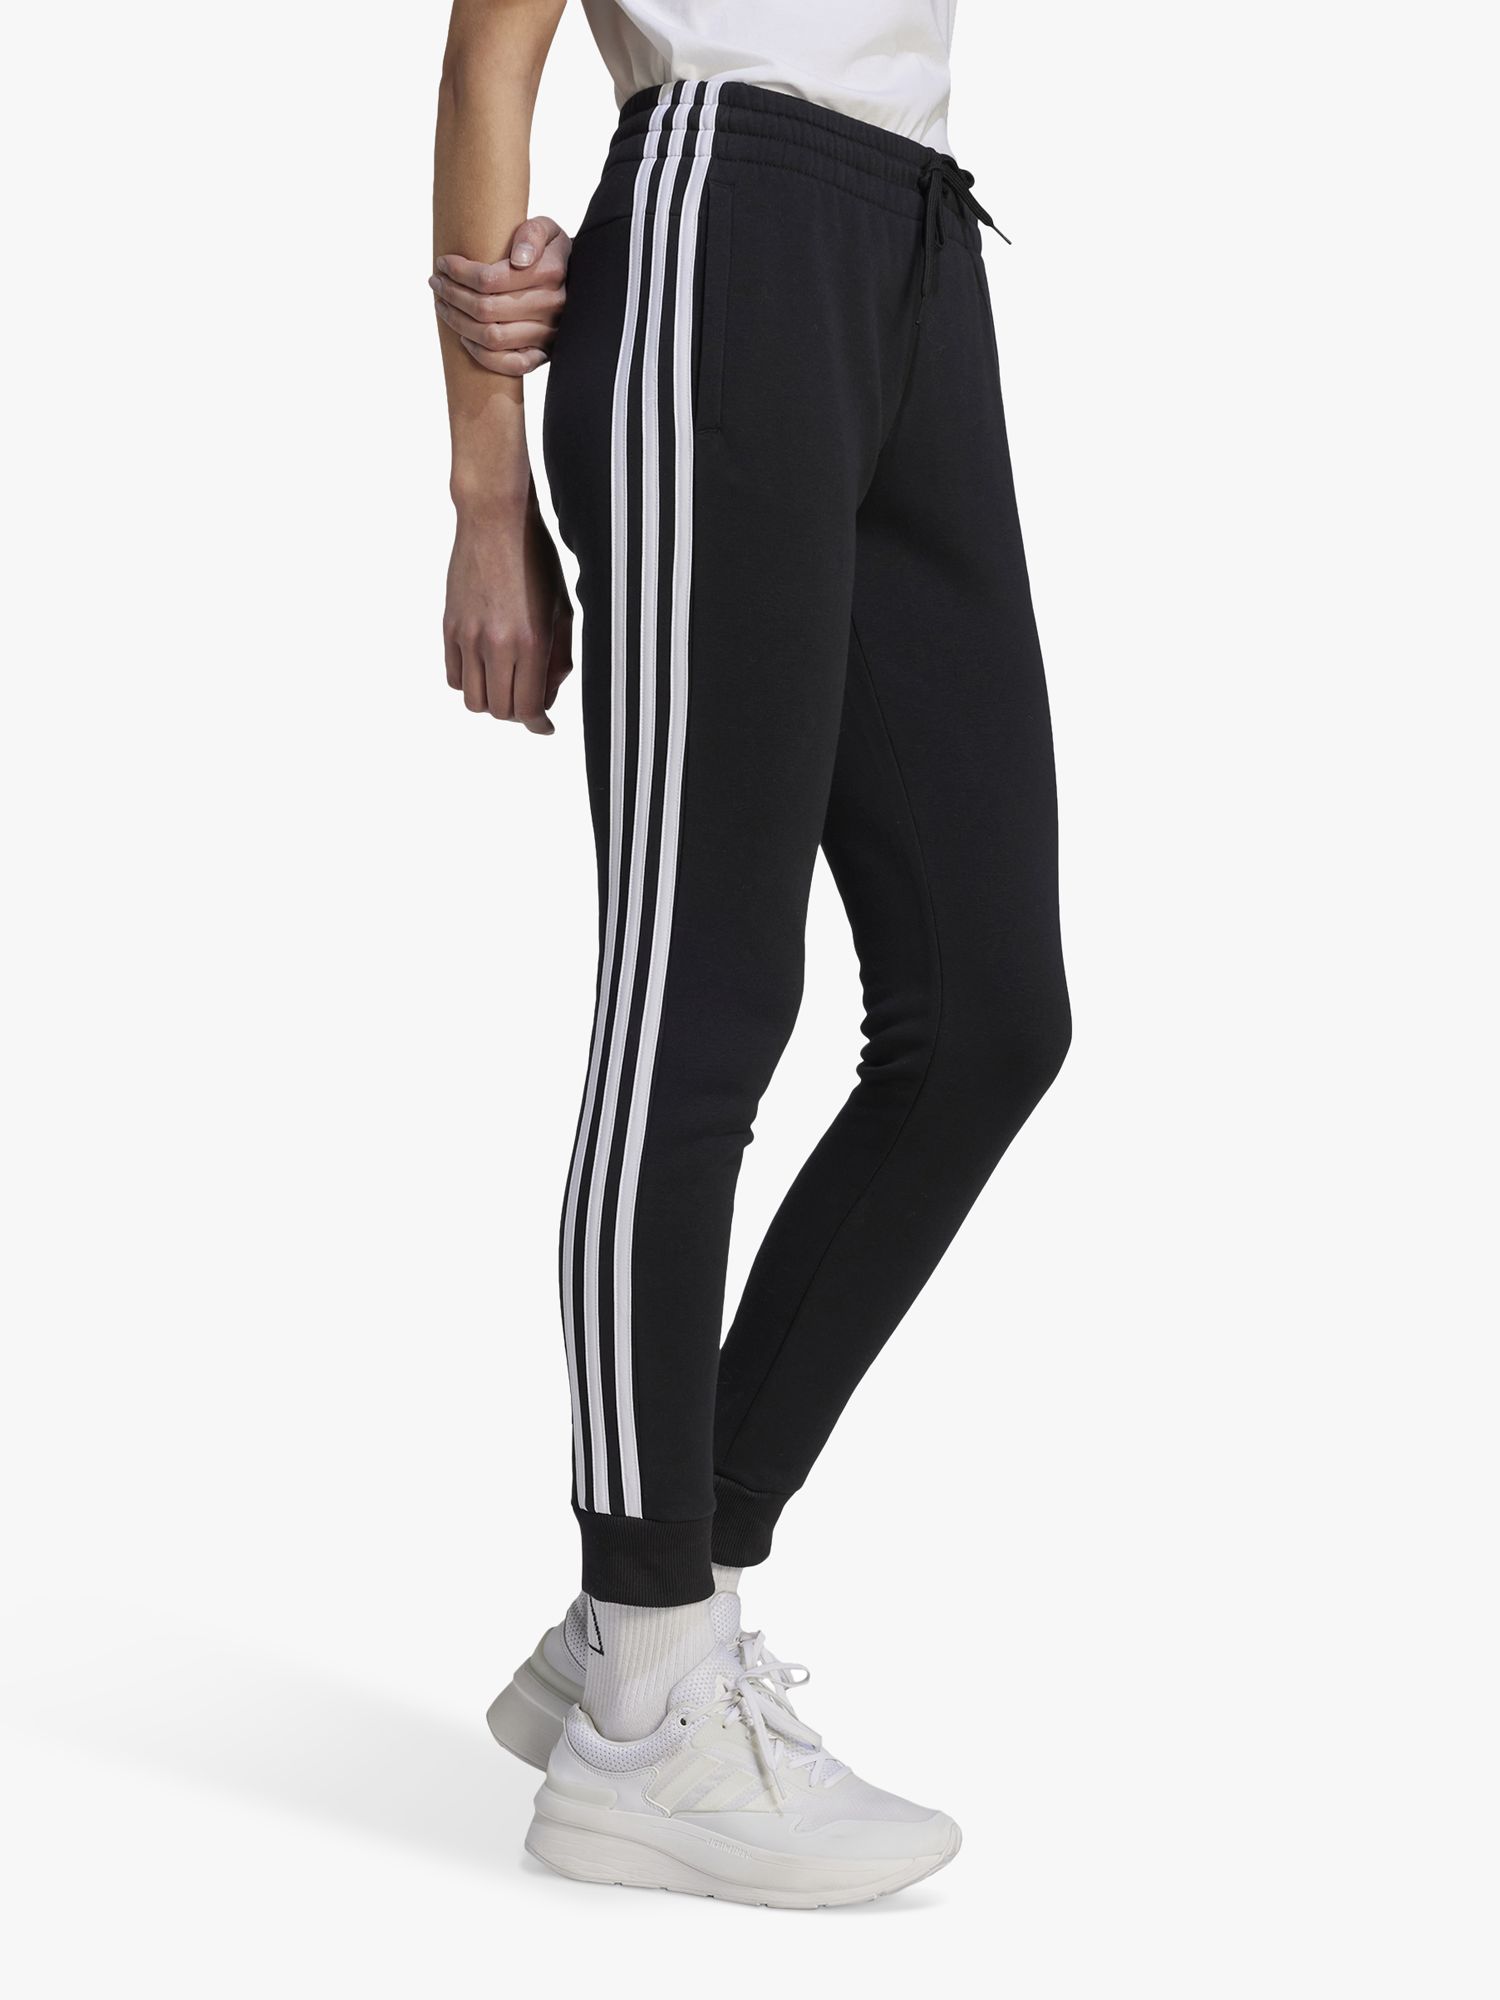 Adidas 3-Stripes Fleece Joggers, Black/White